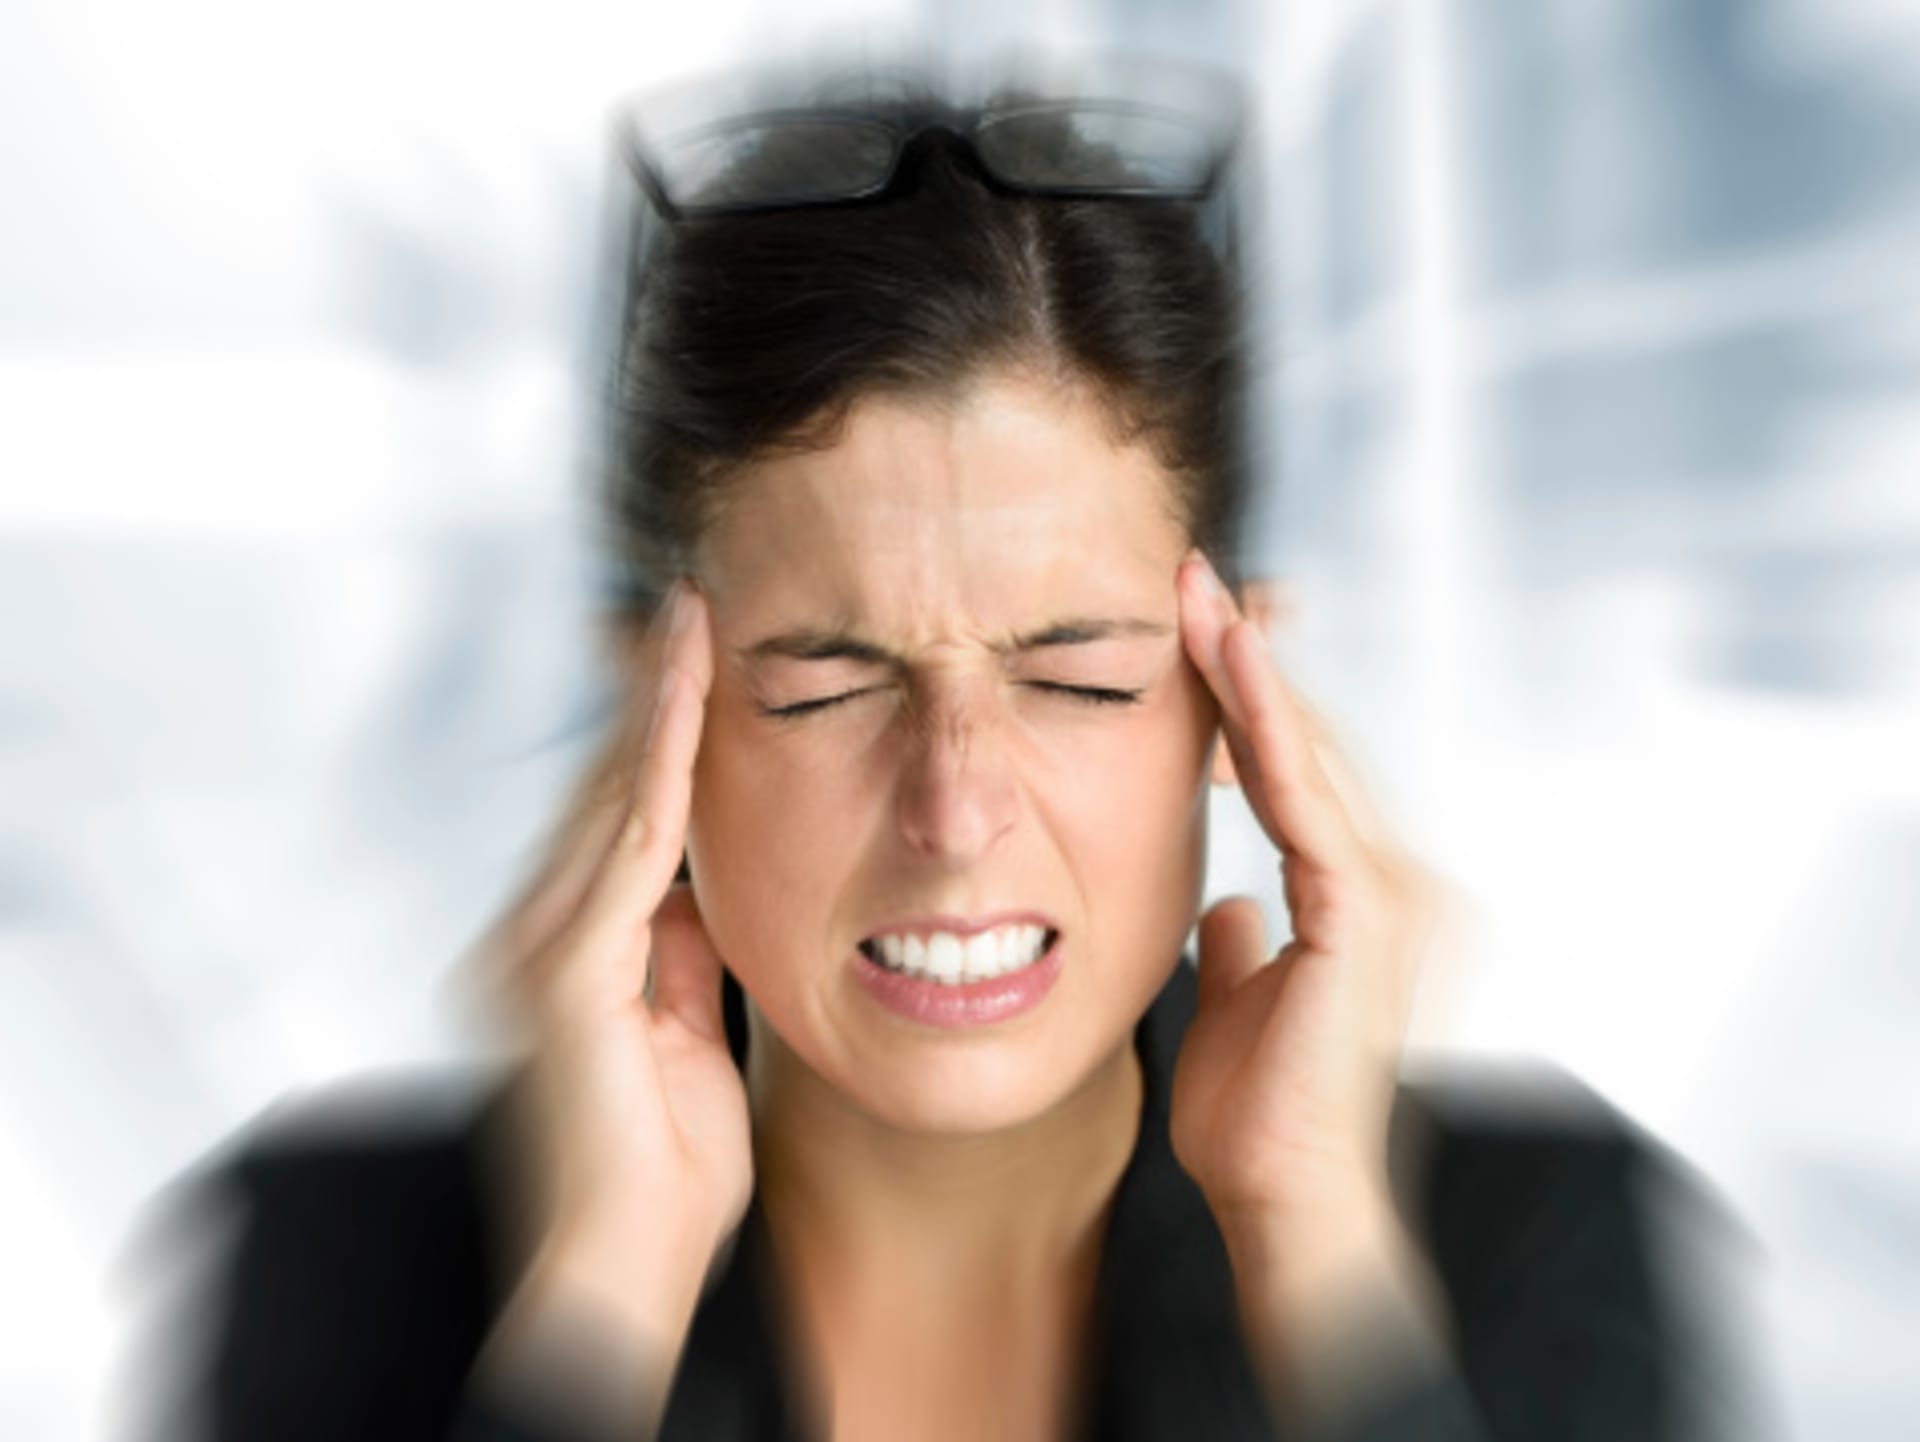 Prudká bolest hlavy může znamenat "jen" migrénu, ale i něco mnohem horšího